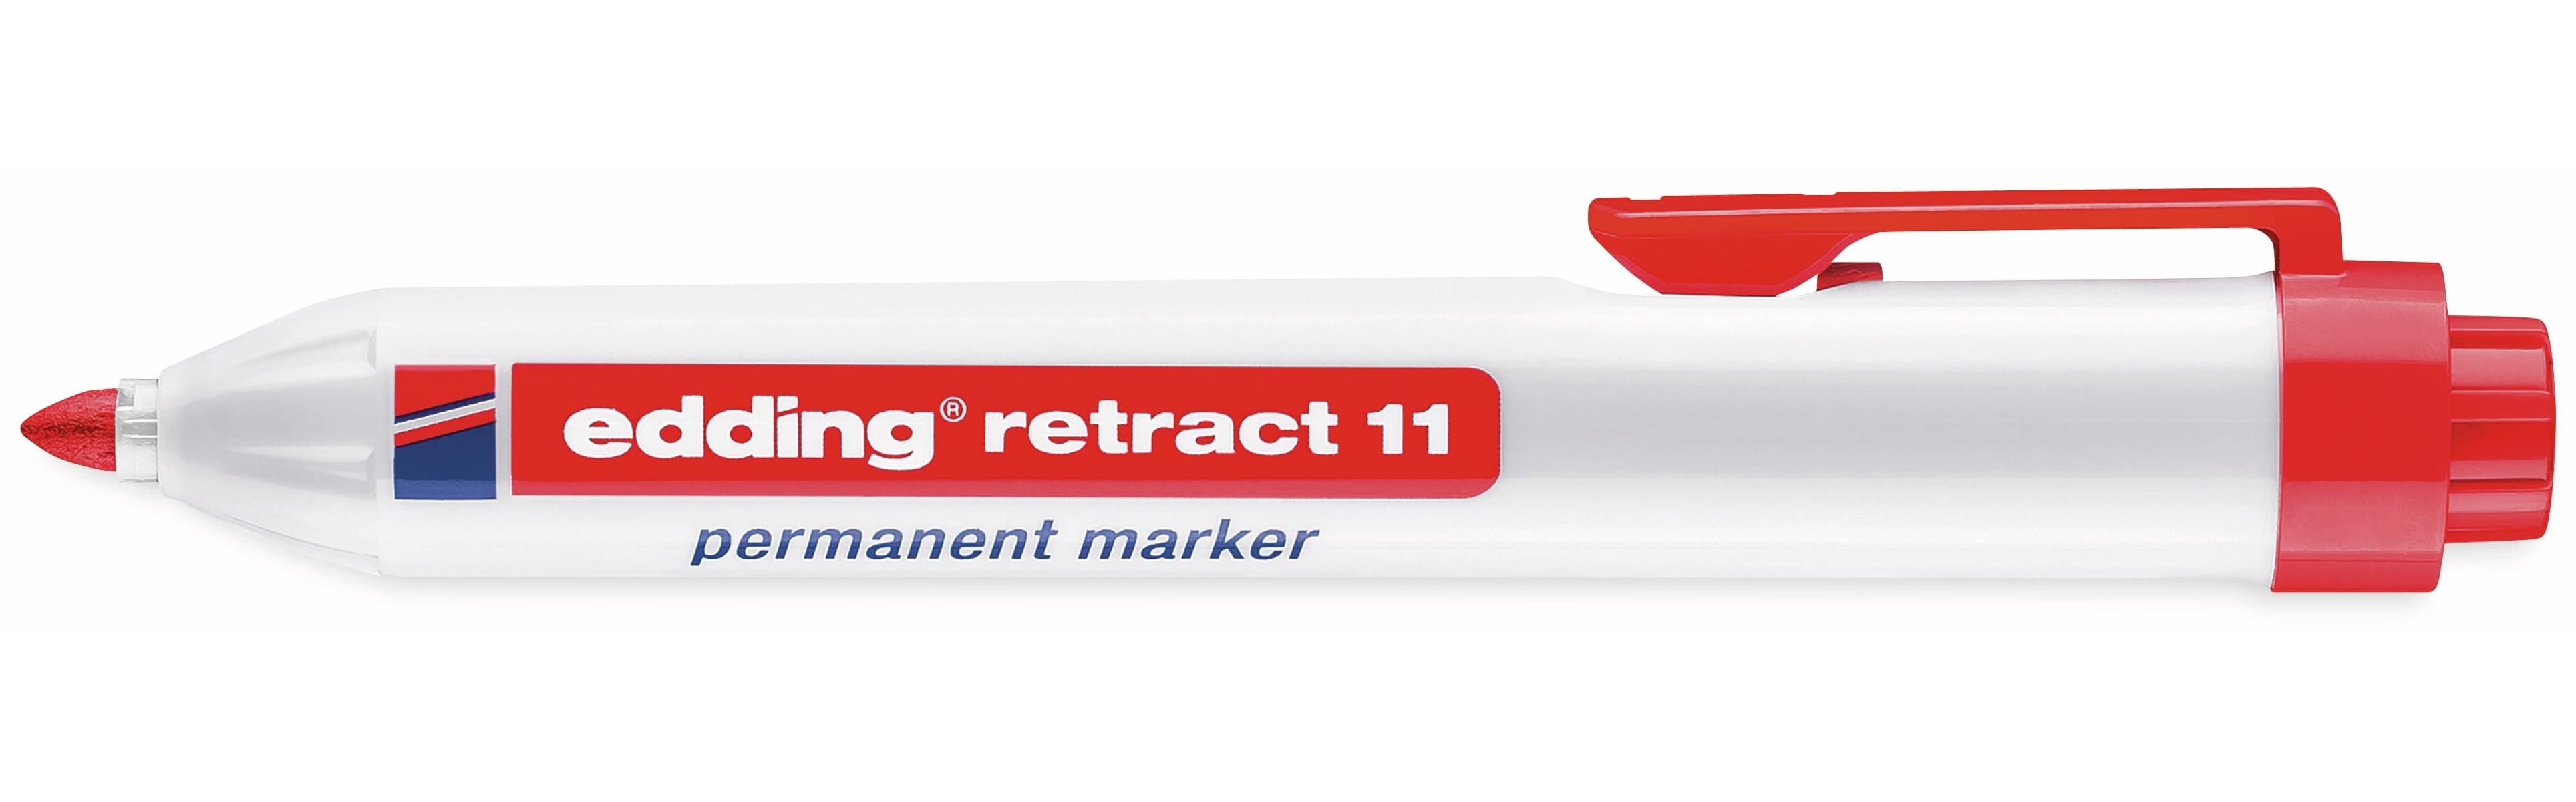 EDDING Permanent-Marker e-11 retract, rot